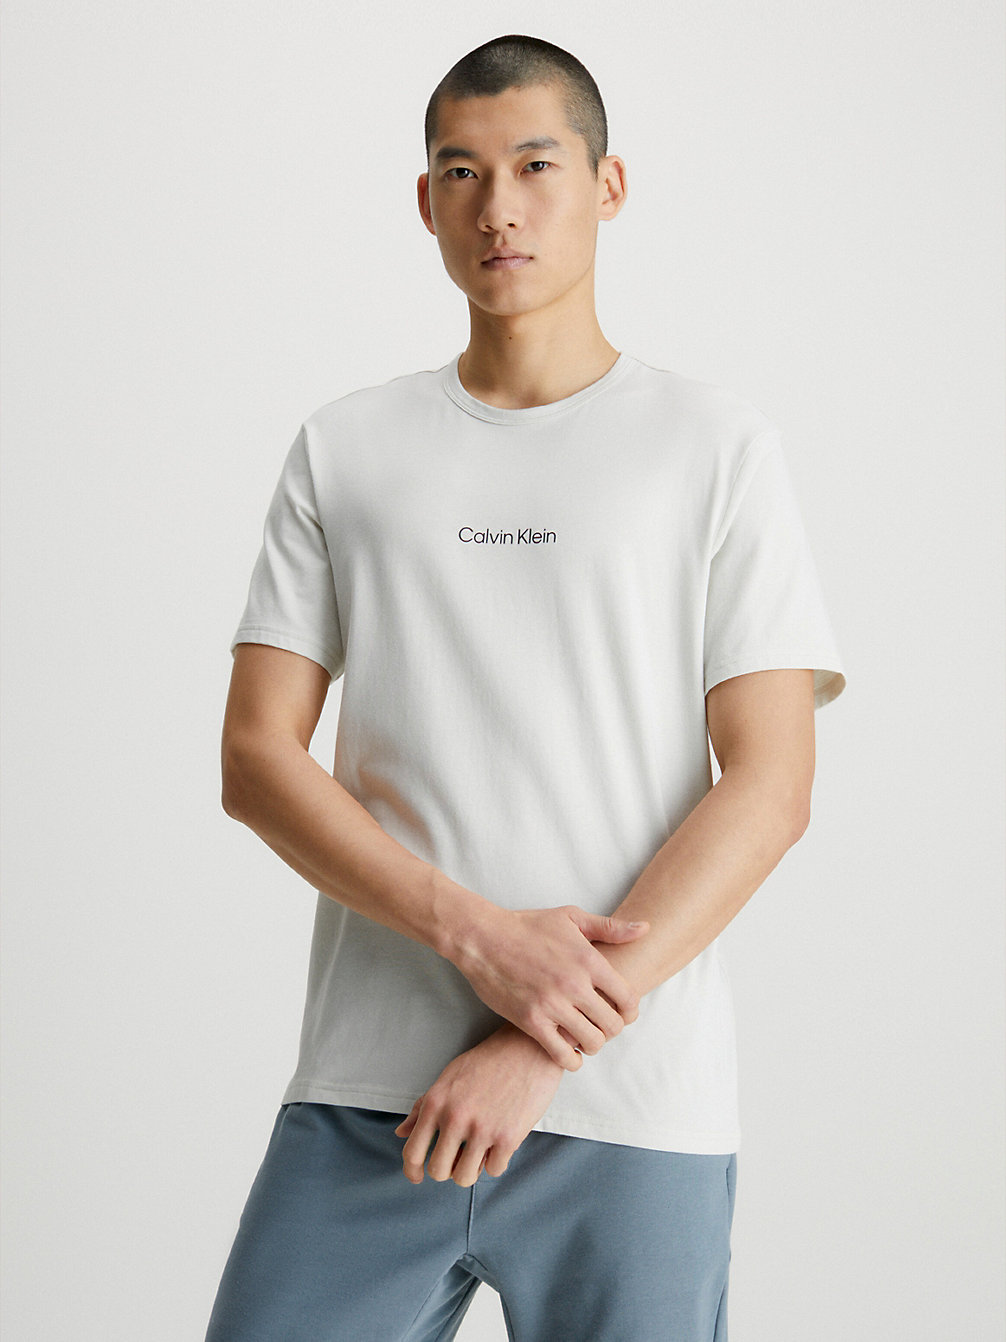 SILVER BIRCH Lounge-T-Shirt - Modern Structure undefined Herren Calvin Klein